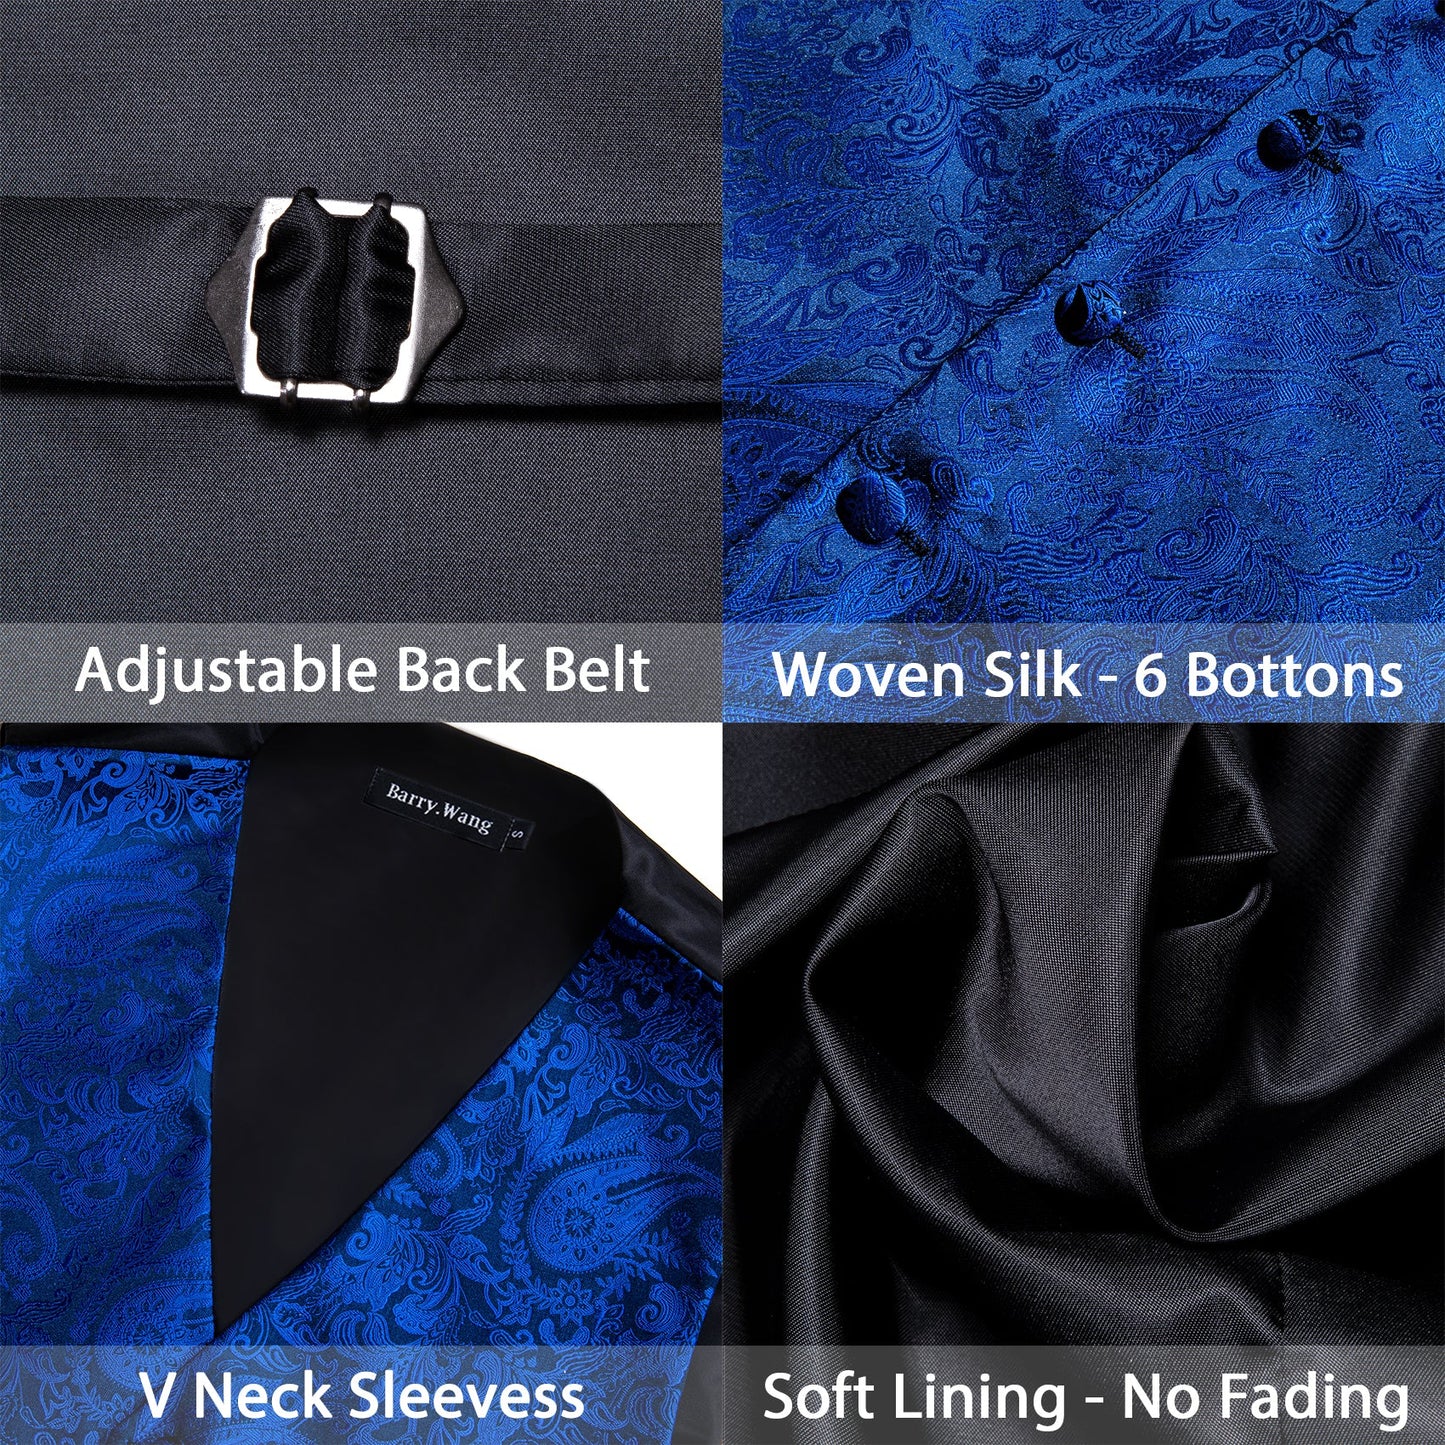 Designer Floral Waistcoat Silky Novelty Vest Royal Blue Guard